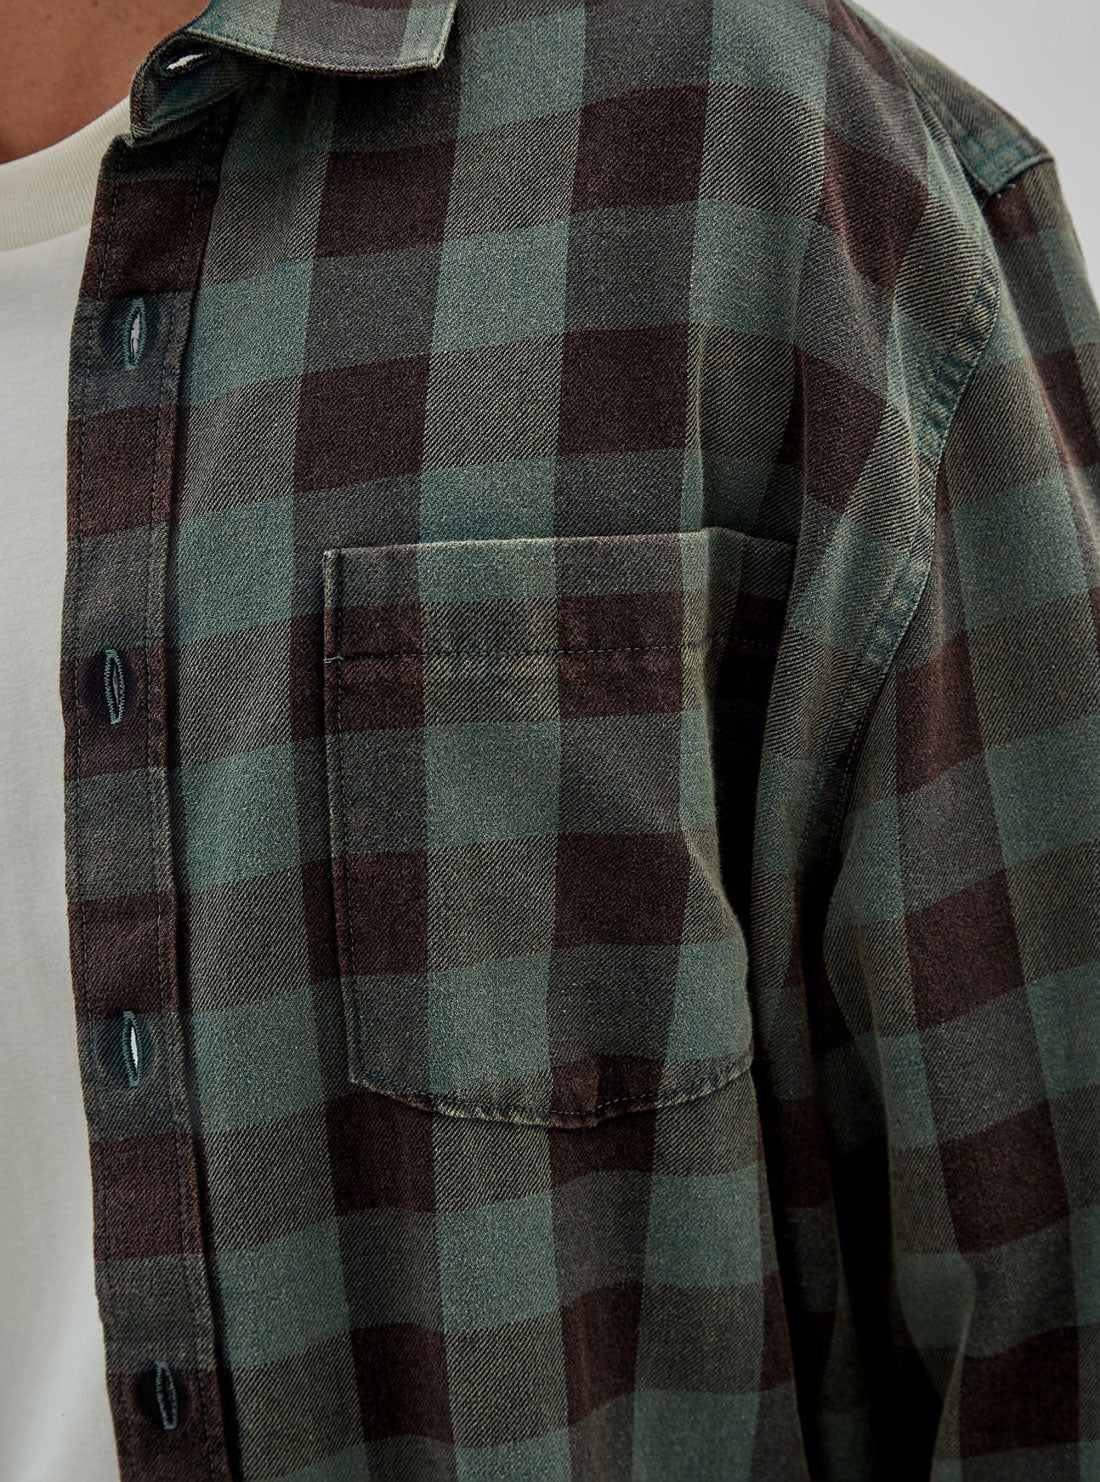 Guess Originals Flannel Long Sleeve Shirt detail view